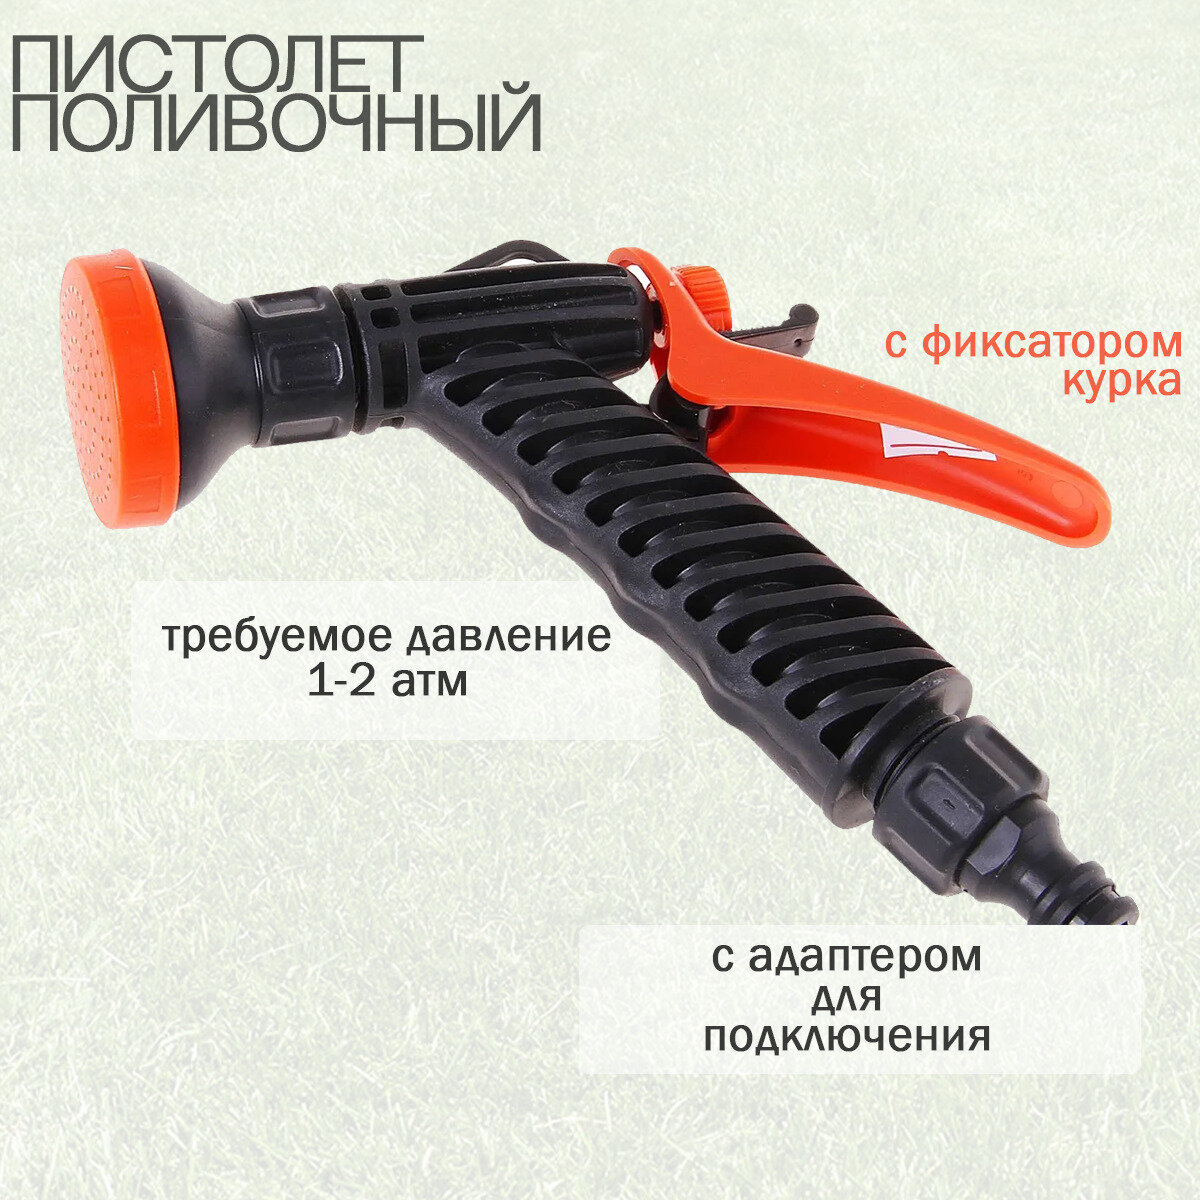 Душ-пистолет поливочный с фиксатором под коннектор "ЖУК" - фотография № 1